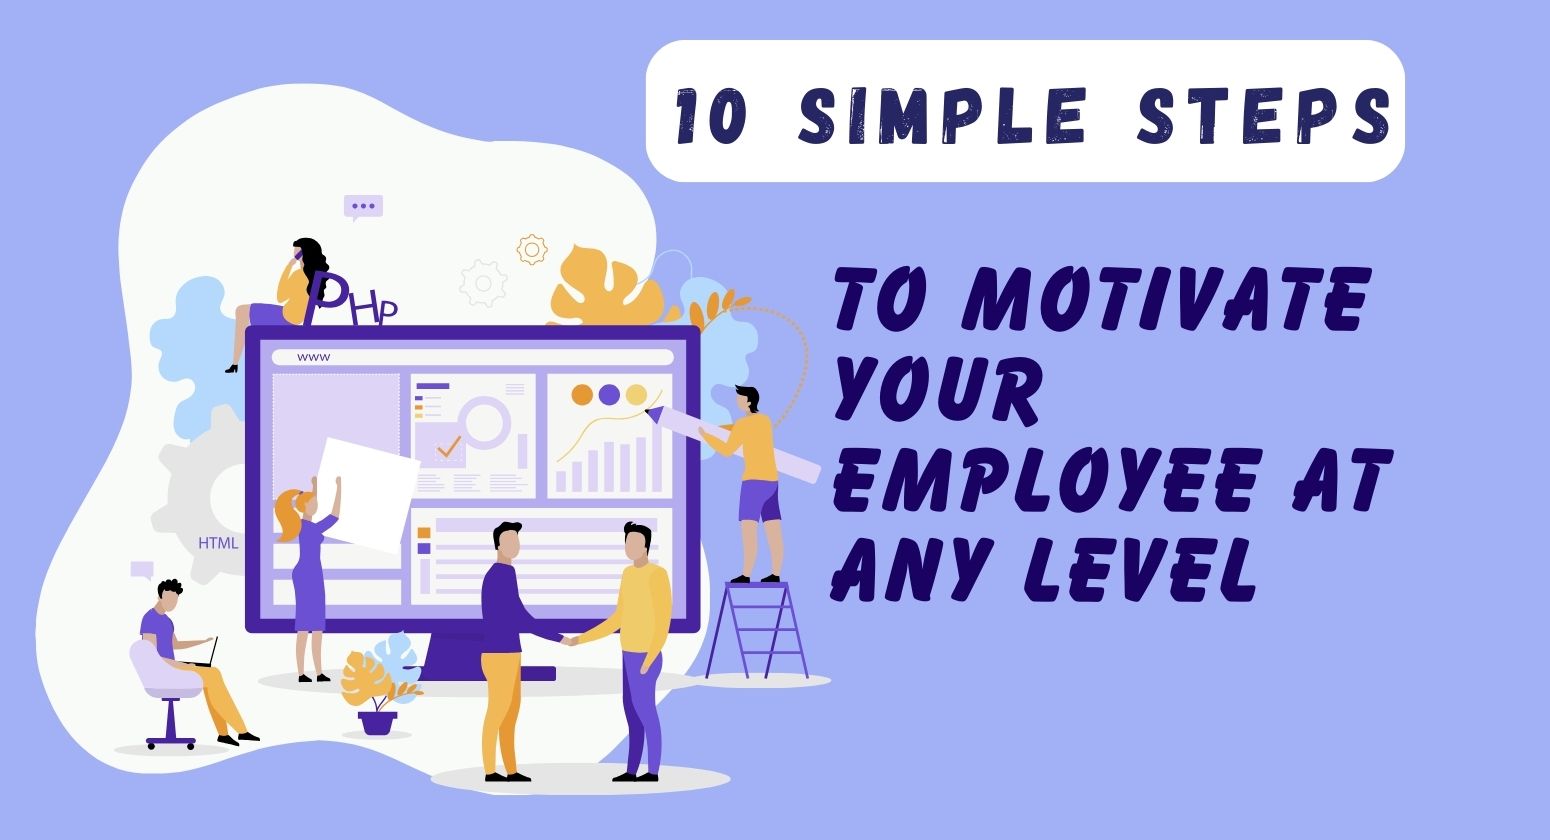 10 ขั้นตอนง่ายๆ ในการจูงใจพนักงานของคุณในทุกระดับ